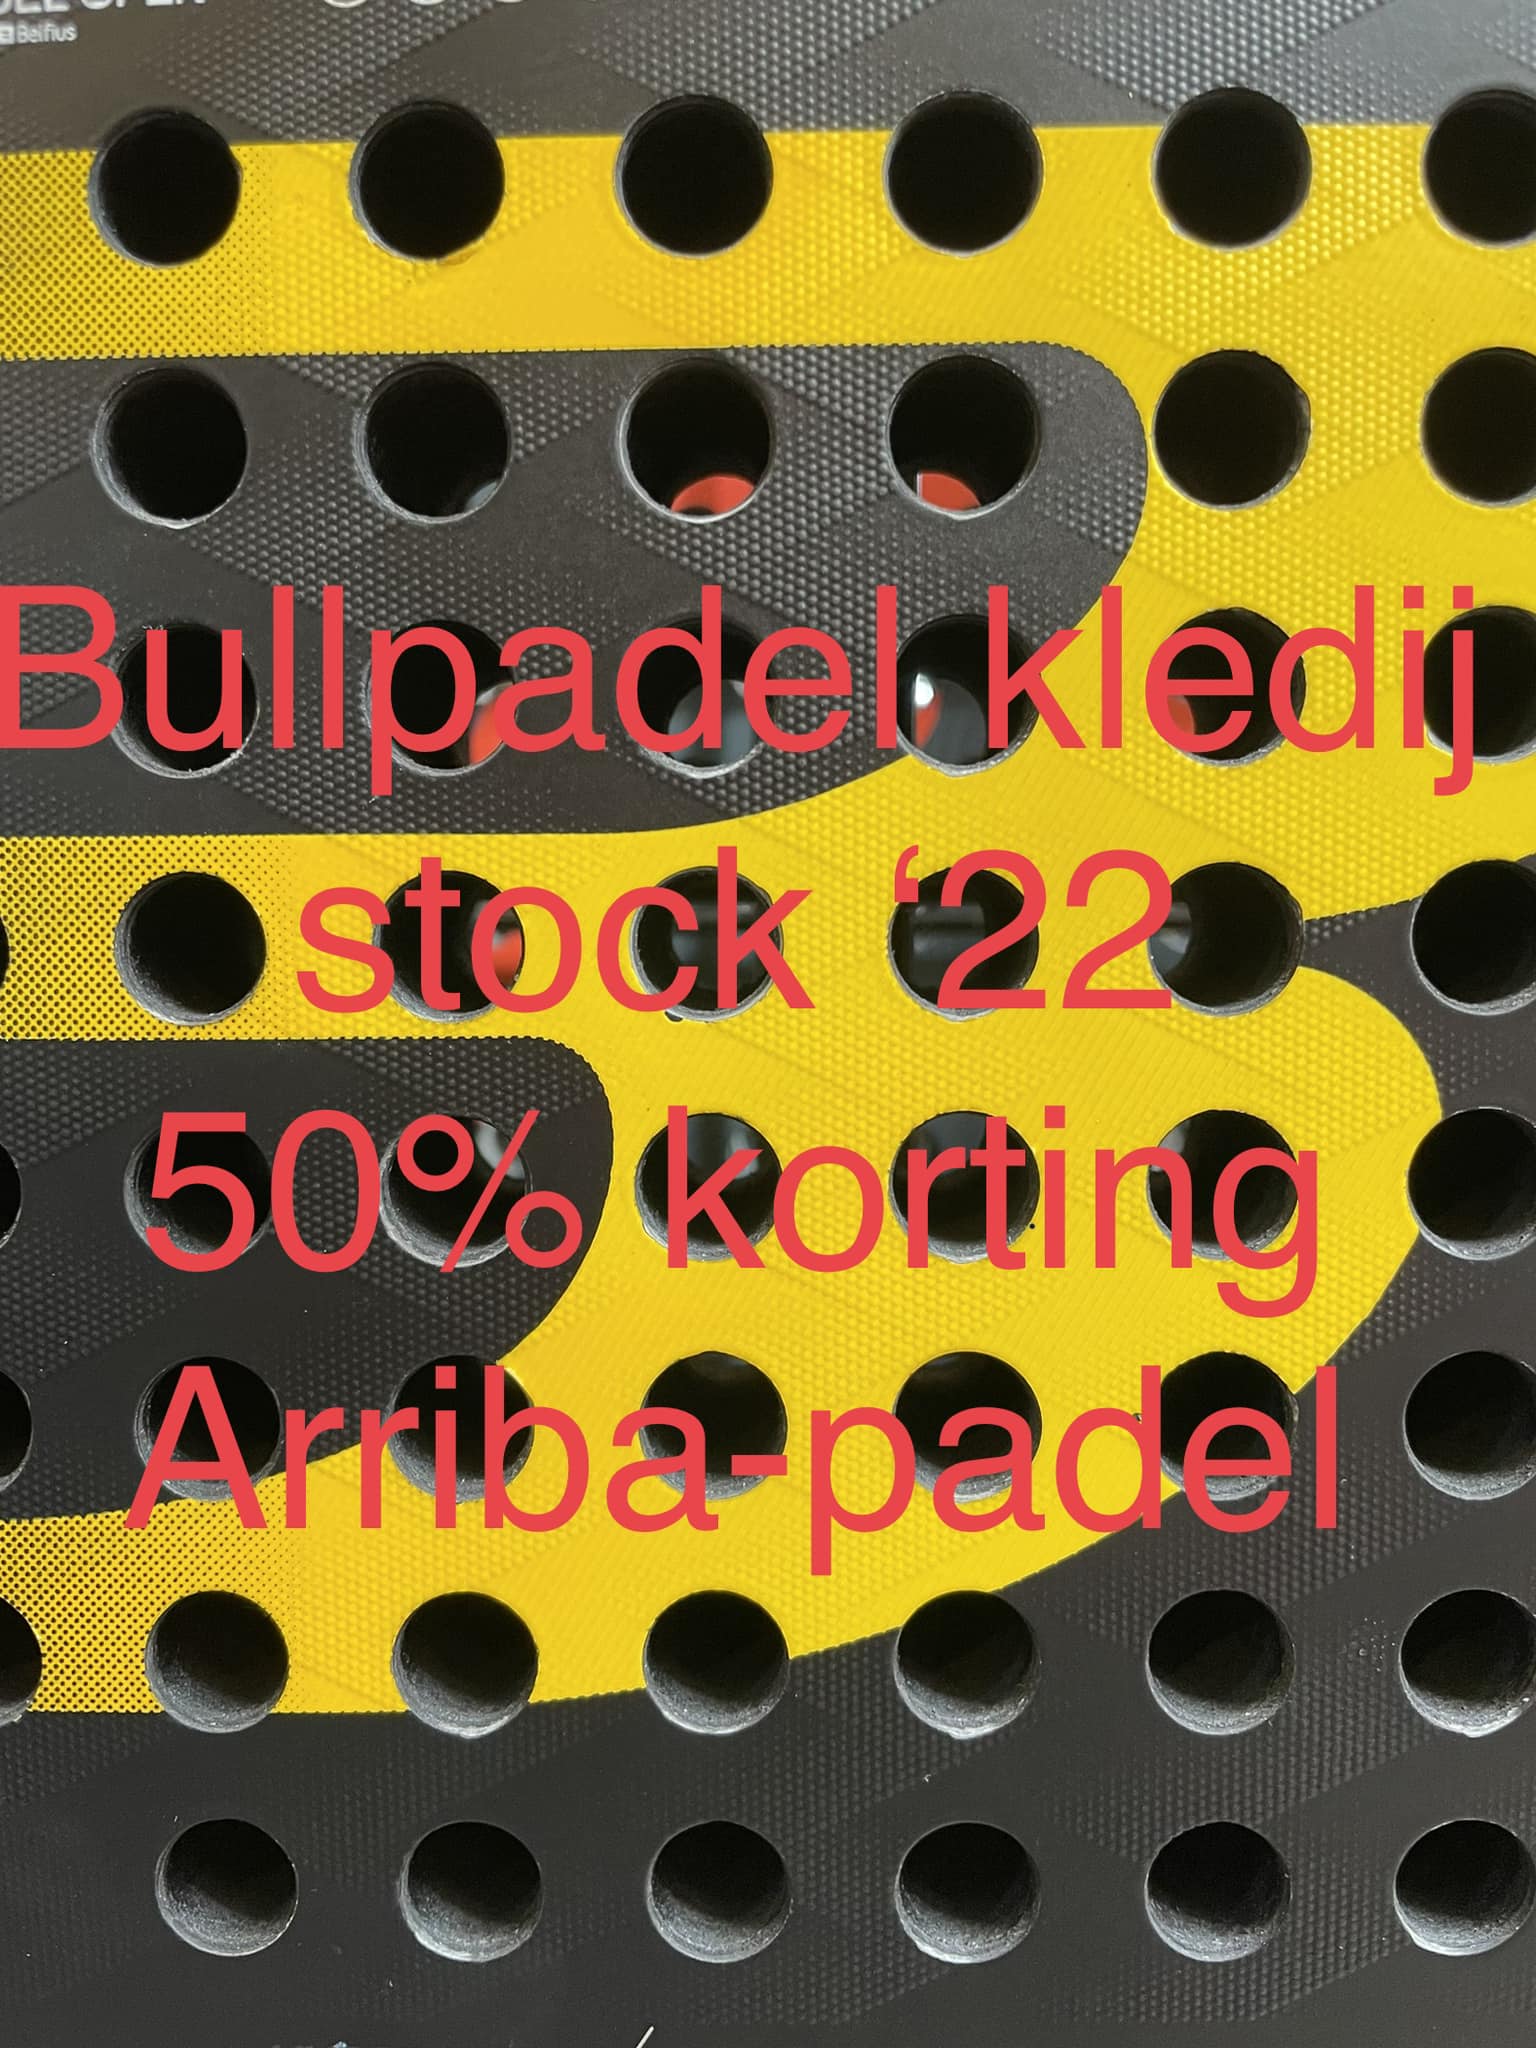 Bullpadel kledij *22 50% korting